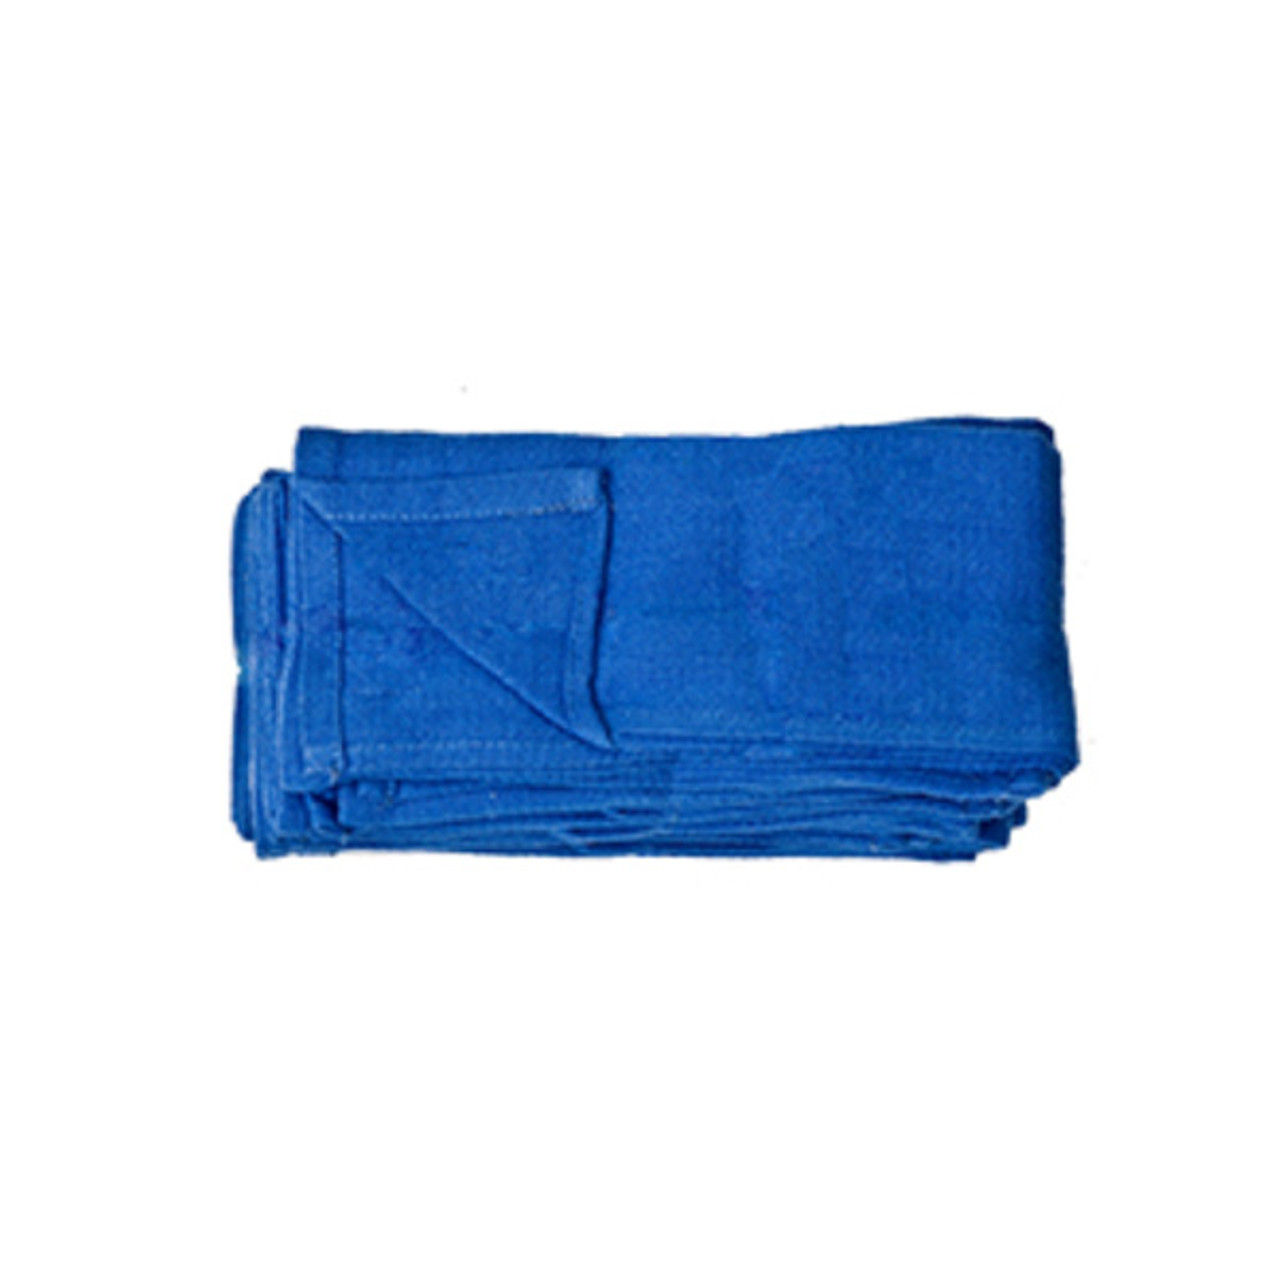 New Blue Huck Towels, 16x24, 50-lb box - Y-pers, Inc.